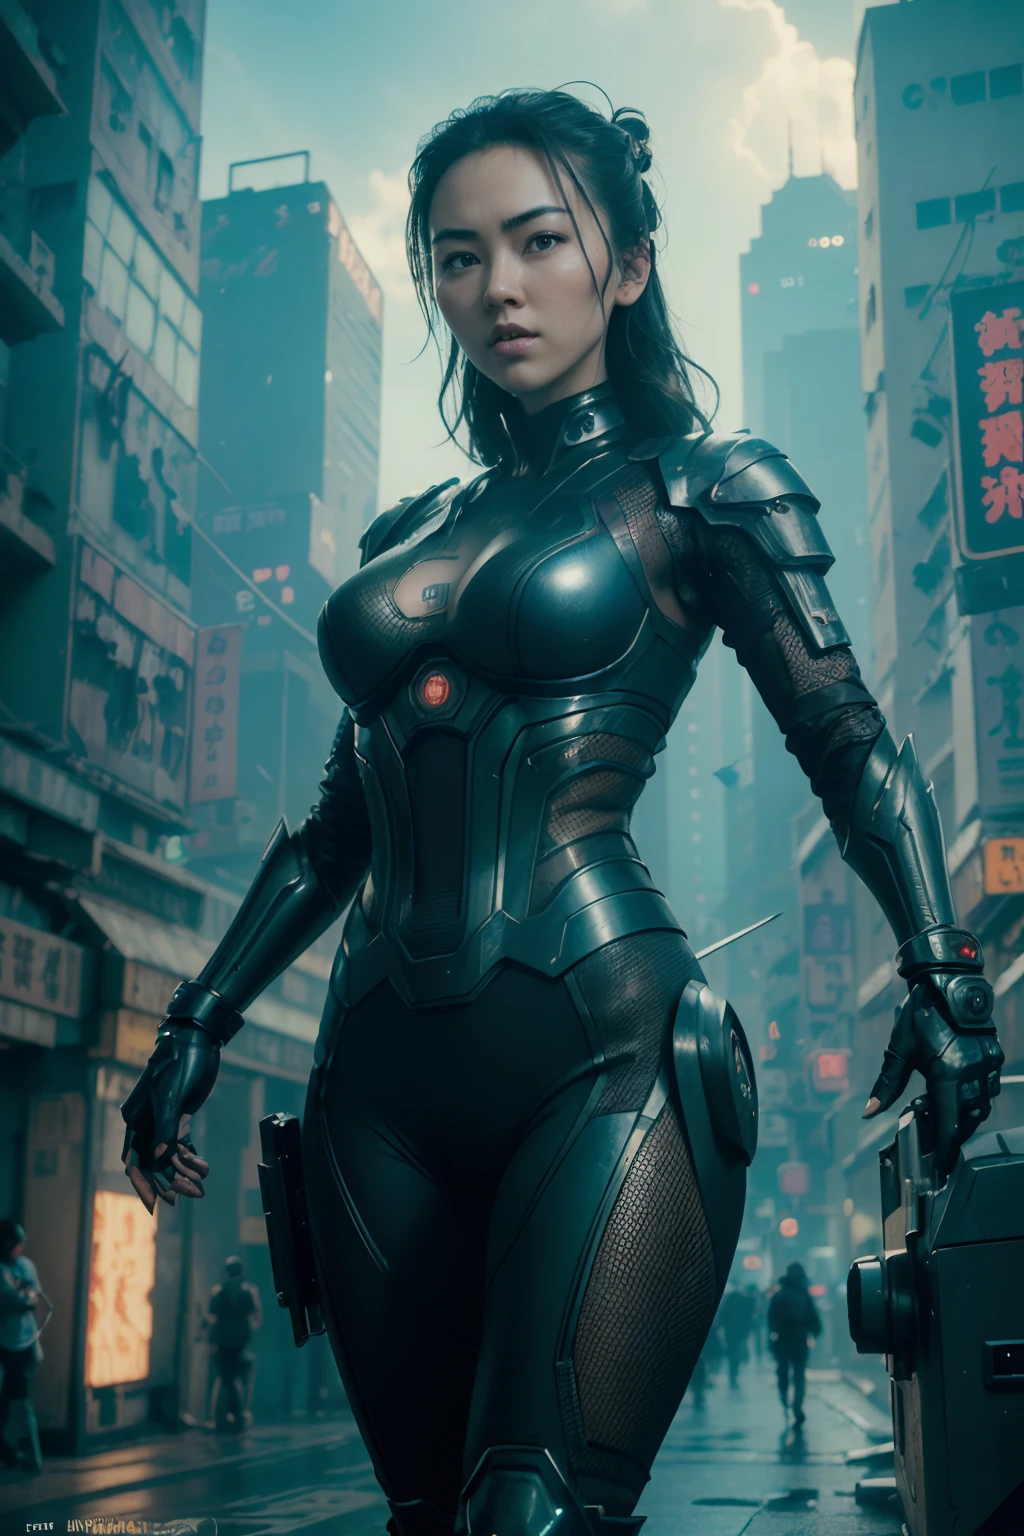 (((Jessica Henwick em uma armadura futurística de assassina ninja cyberpunk, armadura ninja robótica brilhante )), (pose dinâmica), (obra de arte), (hyper realista:1.4), (realista:1.3), (pele com textura real da melhor qualidade),  (iluminação cinematográfica), (cena do filme), 1mulher bonita, (luz brilhante), pele altamente detalhada, poros da pele, (Rosto altamente detalhado:1.1), (olhos altamente detalhados:1.1), realista pupils, (anatomia perfeita:1.1), (Proporções perfeitas:1.1), (fotografia:1.1), (photorealista:1.1), iluminação volumétrica, Iluminação dinâmica, sombras reais, (alta resolução:1.1), foco nitído, (realista, hyperrealista:1.4), Intrincado, alto detalhe, dramático, dispersão subterrânea, grande profundidade de campo, vivid, polido, afiado, ((totalmente afiado)), (extremamente absurdos),8k hdr, ((fundo da cidade cyberpunk de Hong Kong))